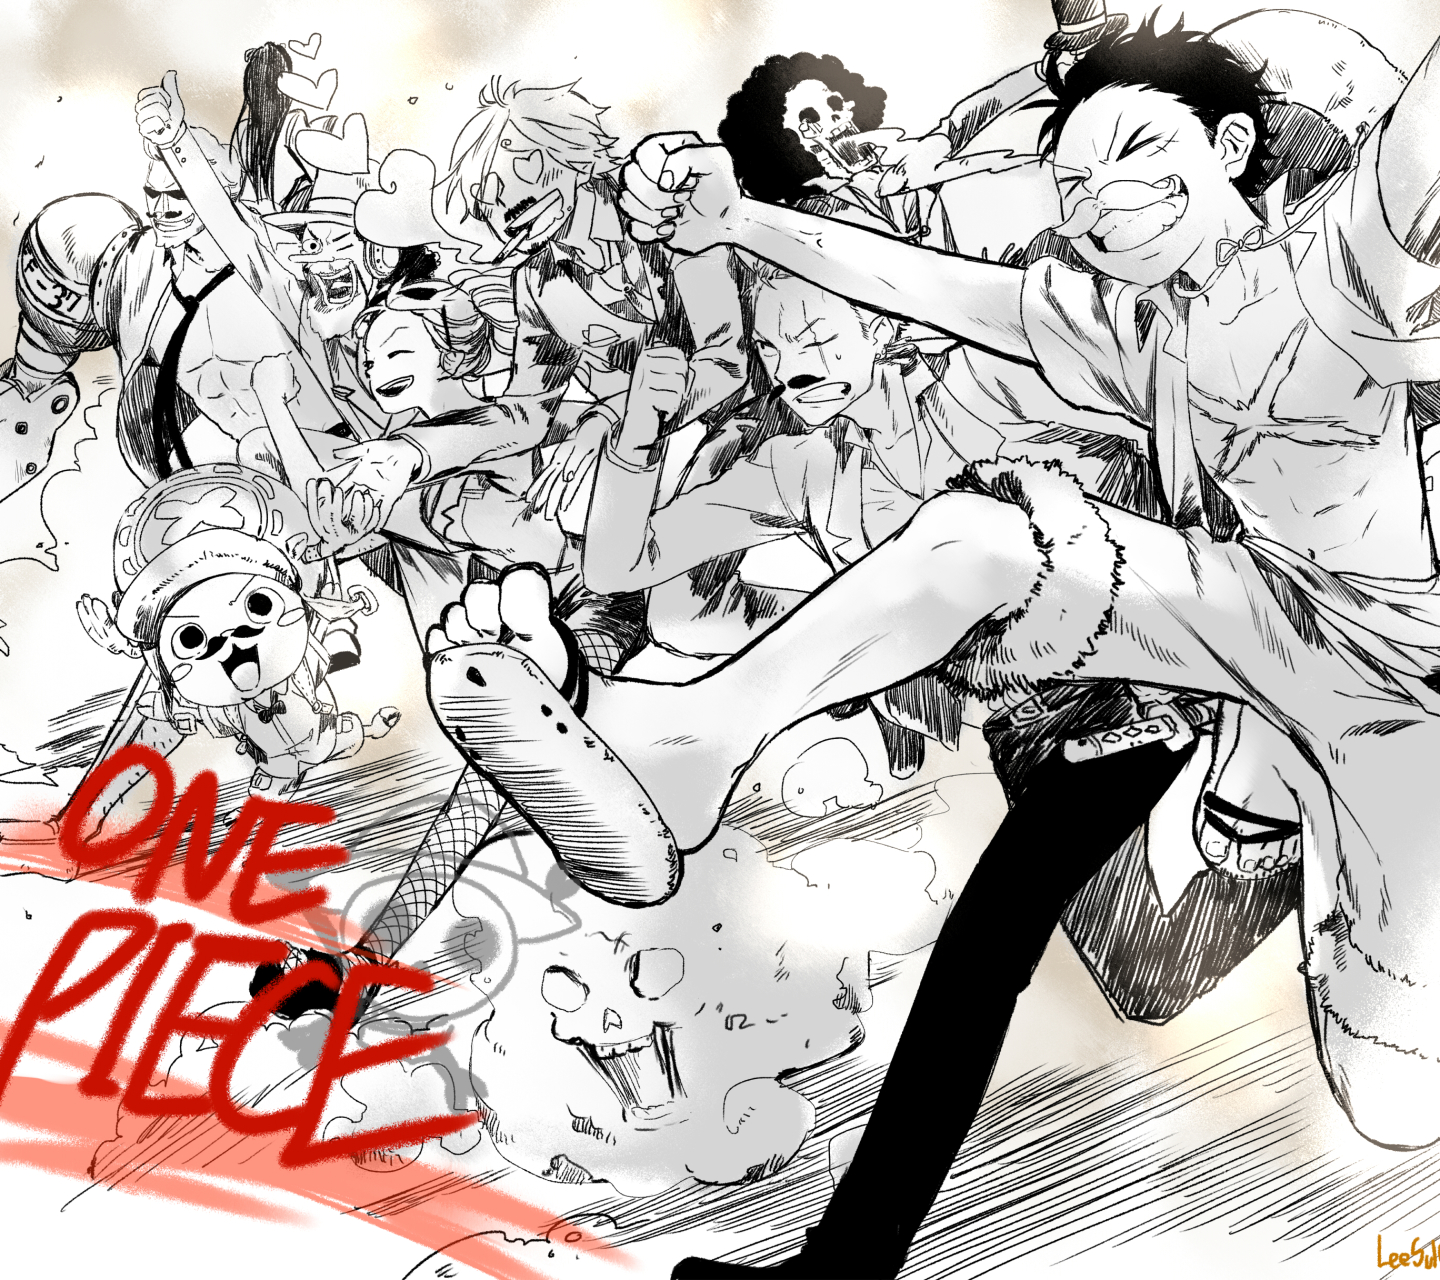 Baixar papel de parede para celular de Anime, Pirata, One Piece, Tony Tony Chopper, Usopp (One Piece), Roronoa Zoro, Monkey D Luffy, Nami (One Piece), Sanji (One Piece), Brook (One Piece), Nico Robin, Franky (One Piece) gratuito.